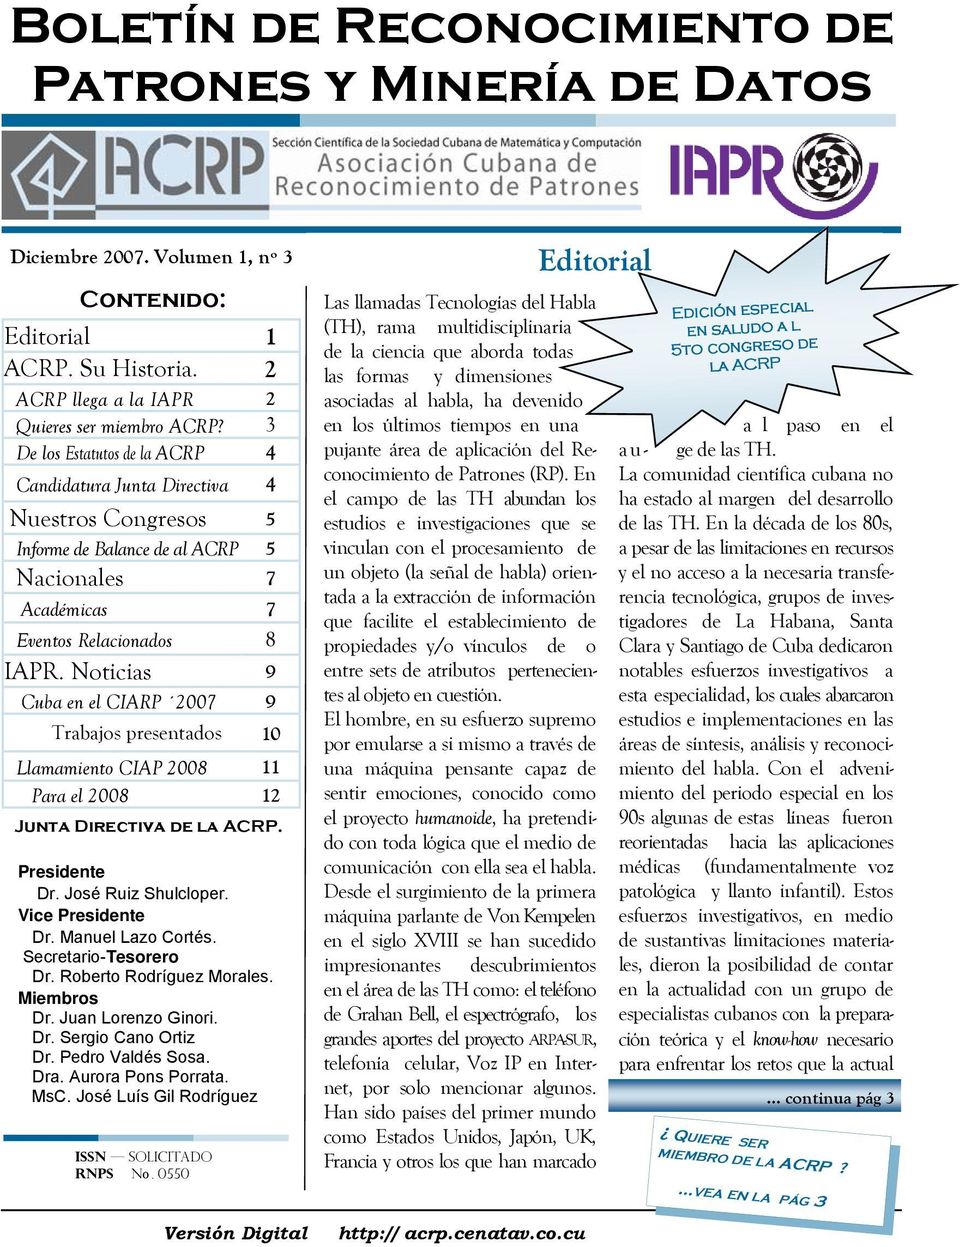 Noticias 9 Cuba en el CIARP 2007 9 Trabajos presentados 10 Llamamiento CIAP 2008 11 Para el 2008 12 Junta Directiva de la ACRP. ISSN solicitado RNPS No.